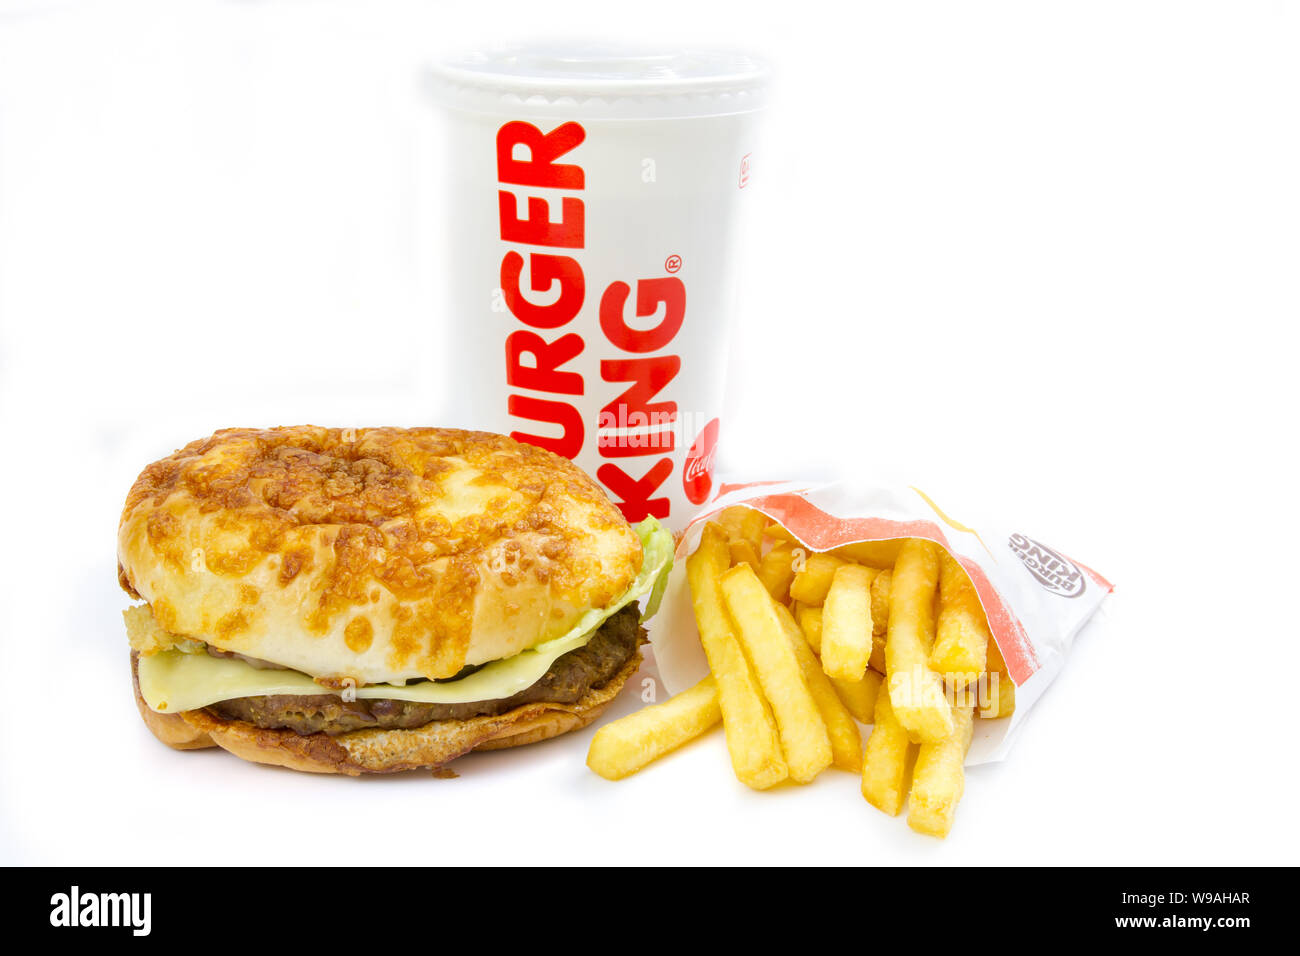 Menu Burger king Photo Stock - Alamy